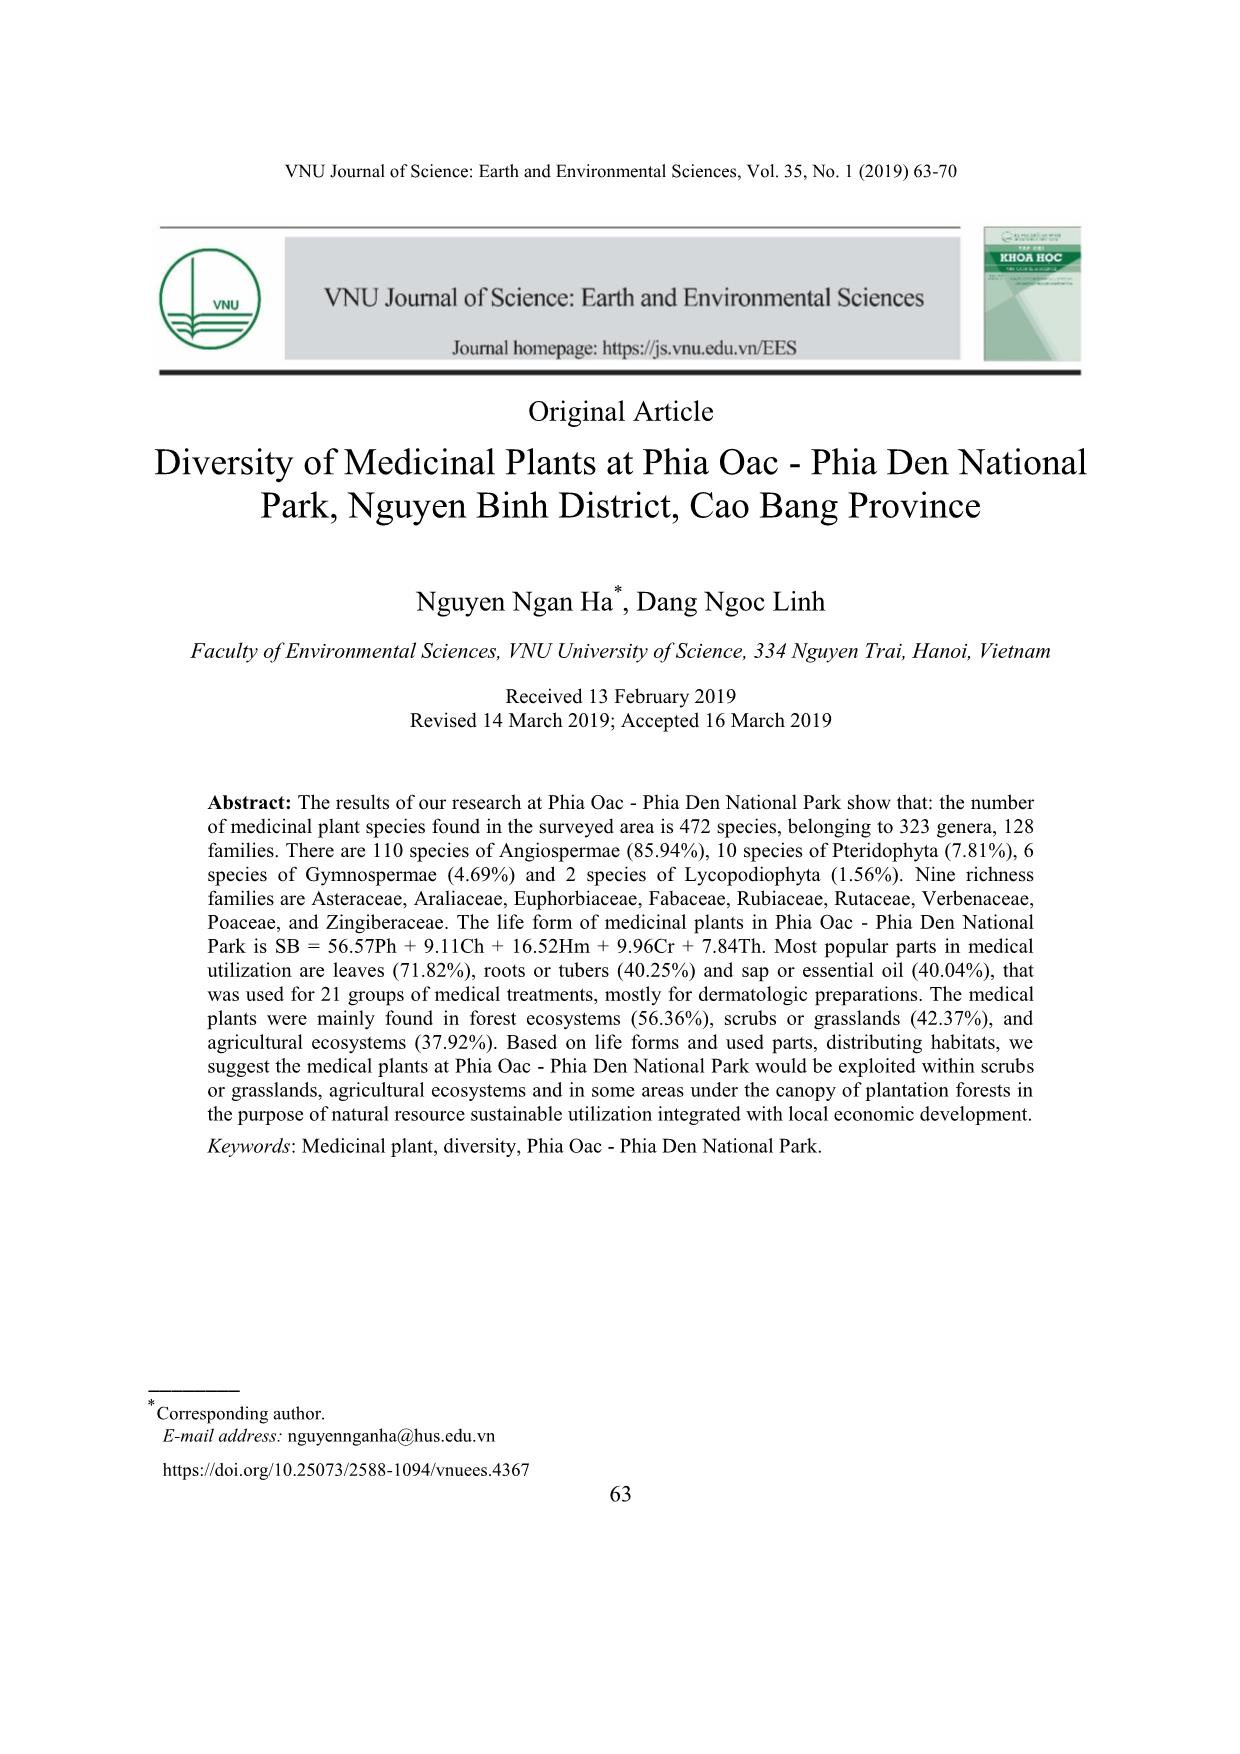 Đa dạng tài nguyên cây thuốc ở Vườn Quốc gia Phia Oắc - Phia Đén, huyện Nguyên Bình, tỉnh Cao Bằng trang 1